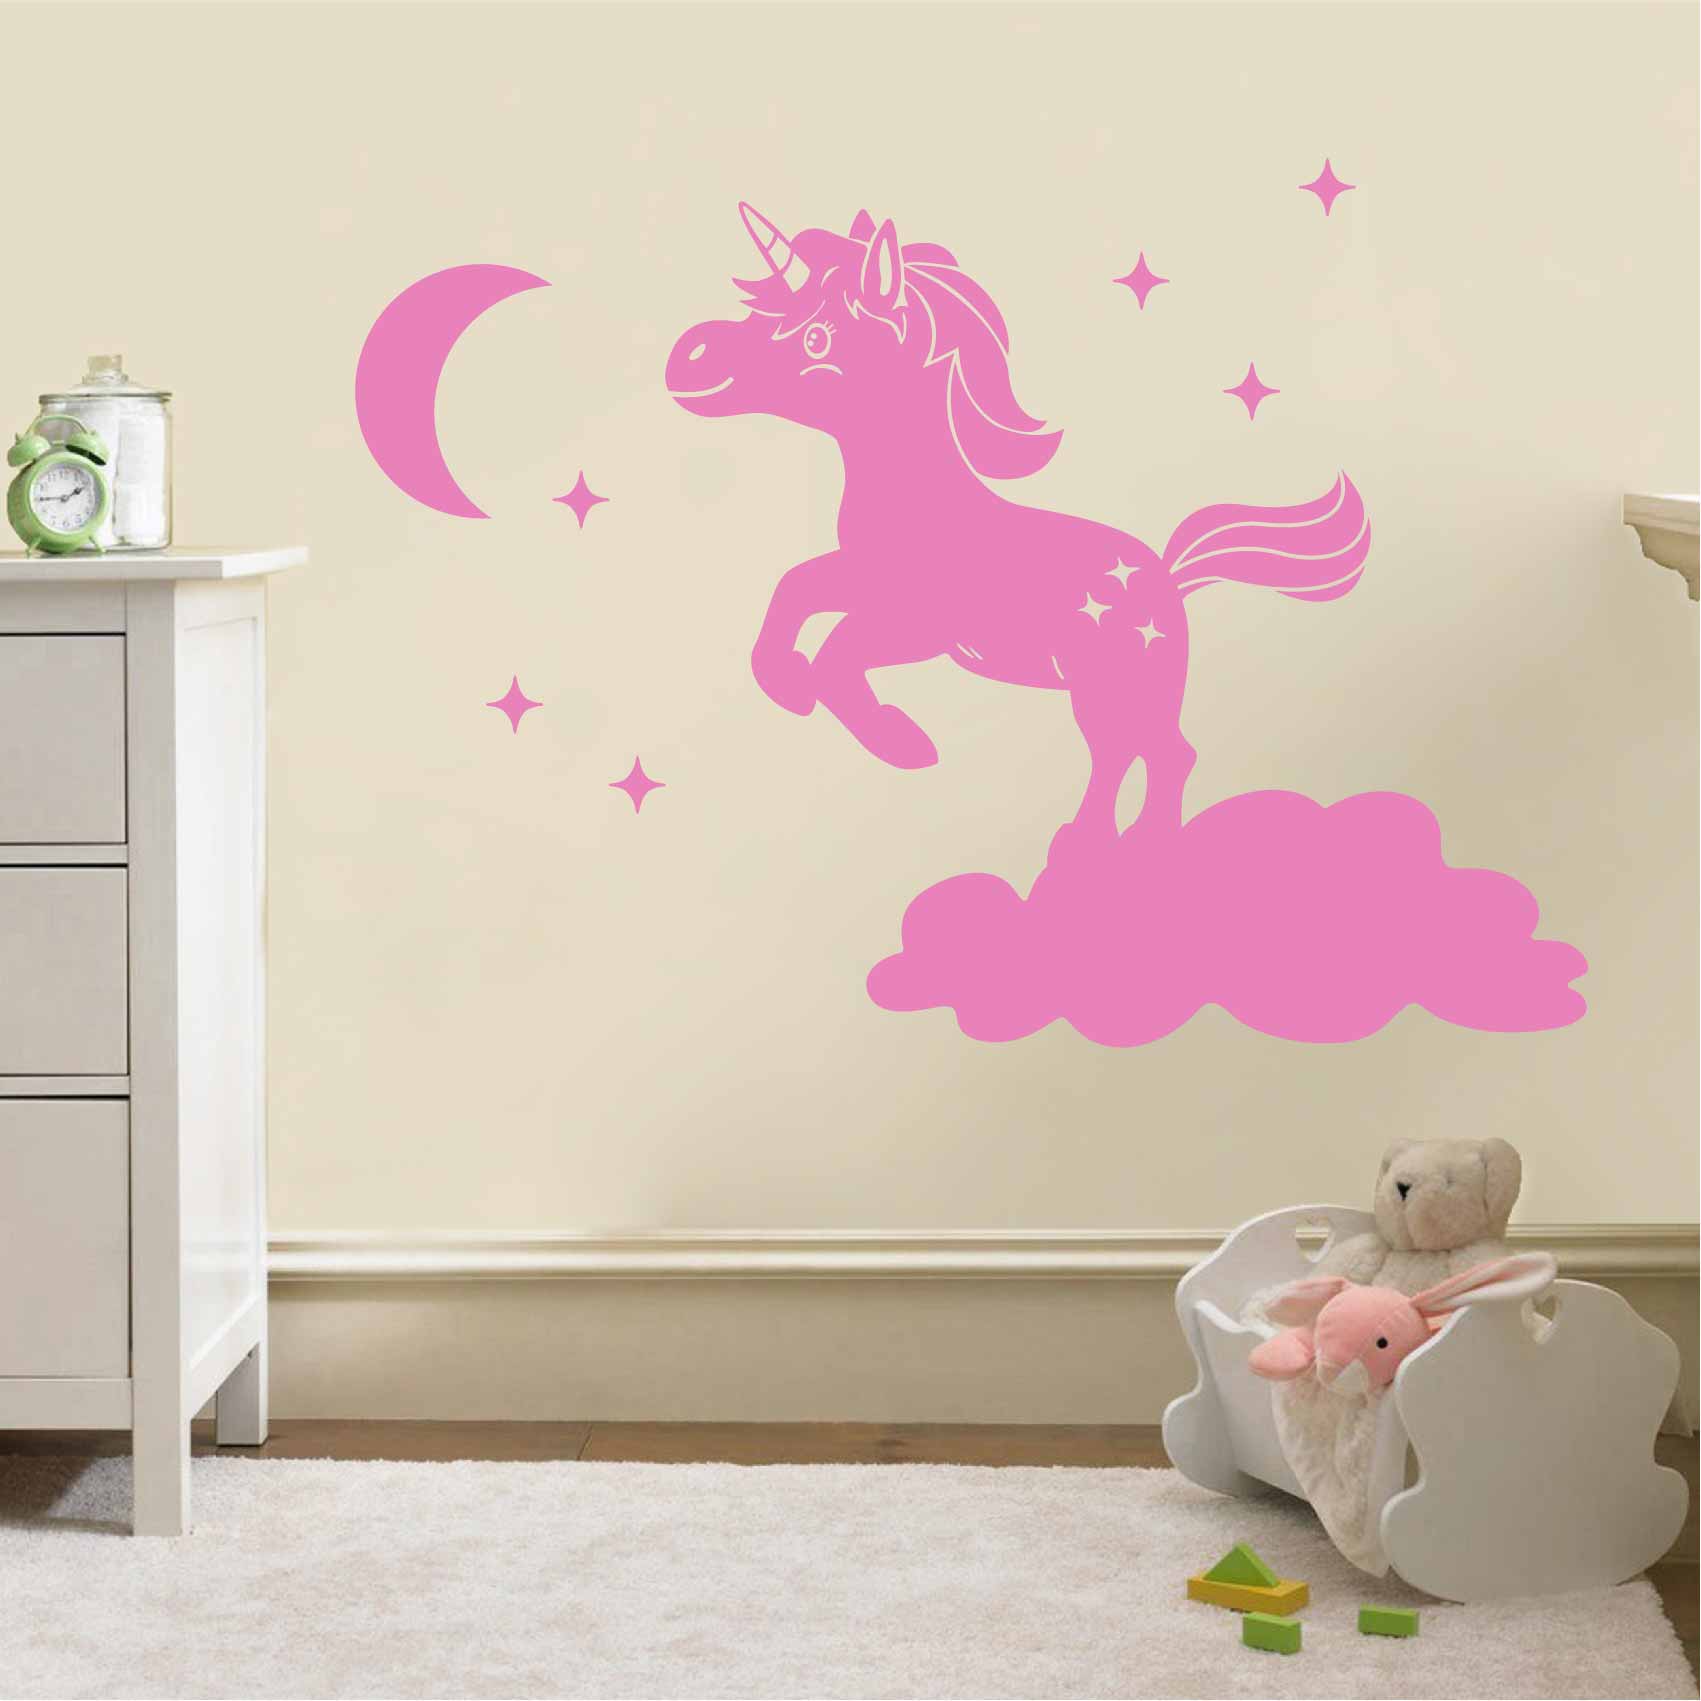 stickers-bébé-licorne-ref12licorne-stickers-muraux-licorne-autocollant-chambre-salon-deco-sticker-mural-licornes-enfant